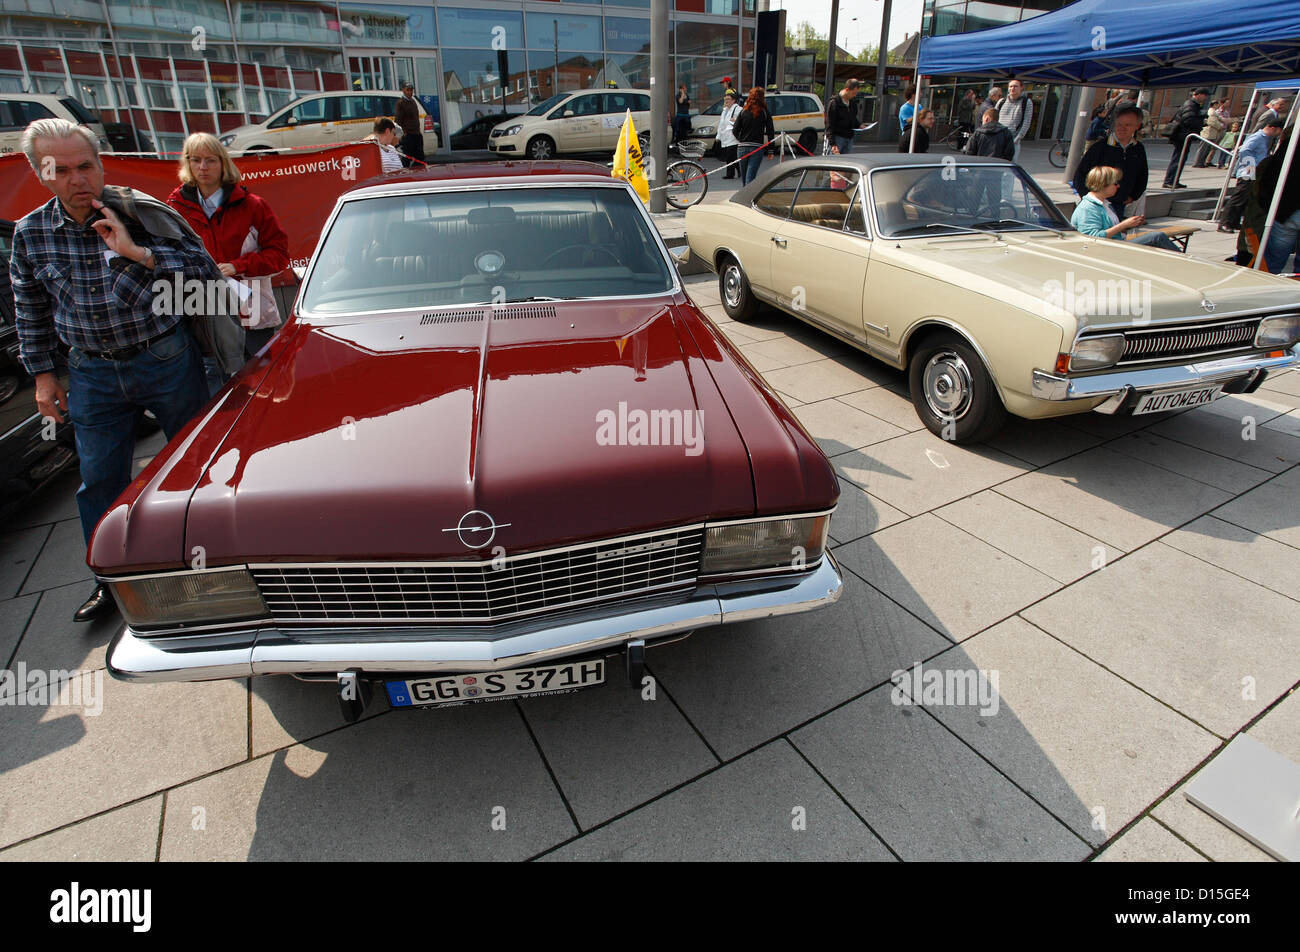 bijl Literatuur waarschijnlijkheid Russelsheim, Germany, Opel old makes are shown for DGB May Day rally Stock  Photo - Alamy